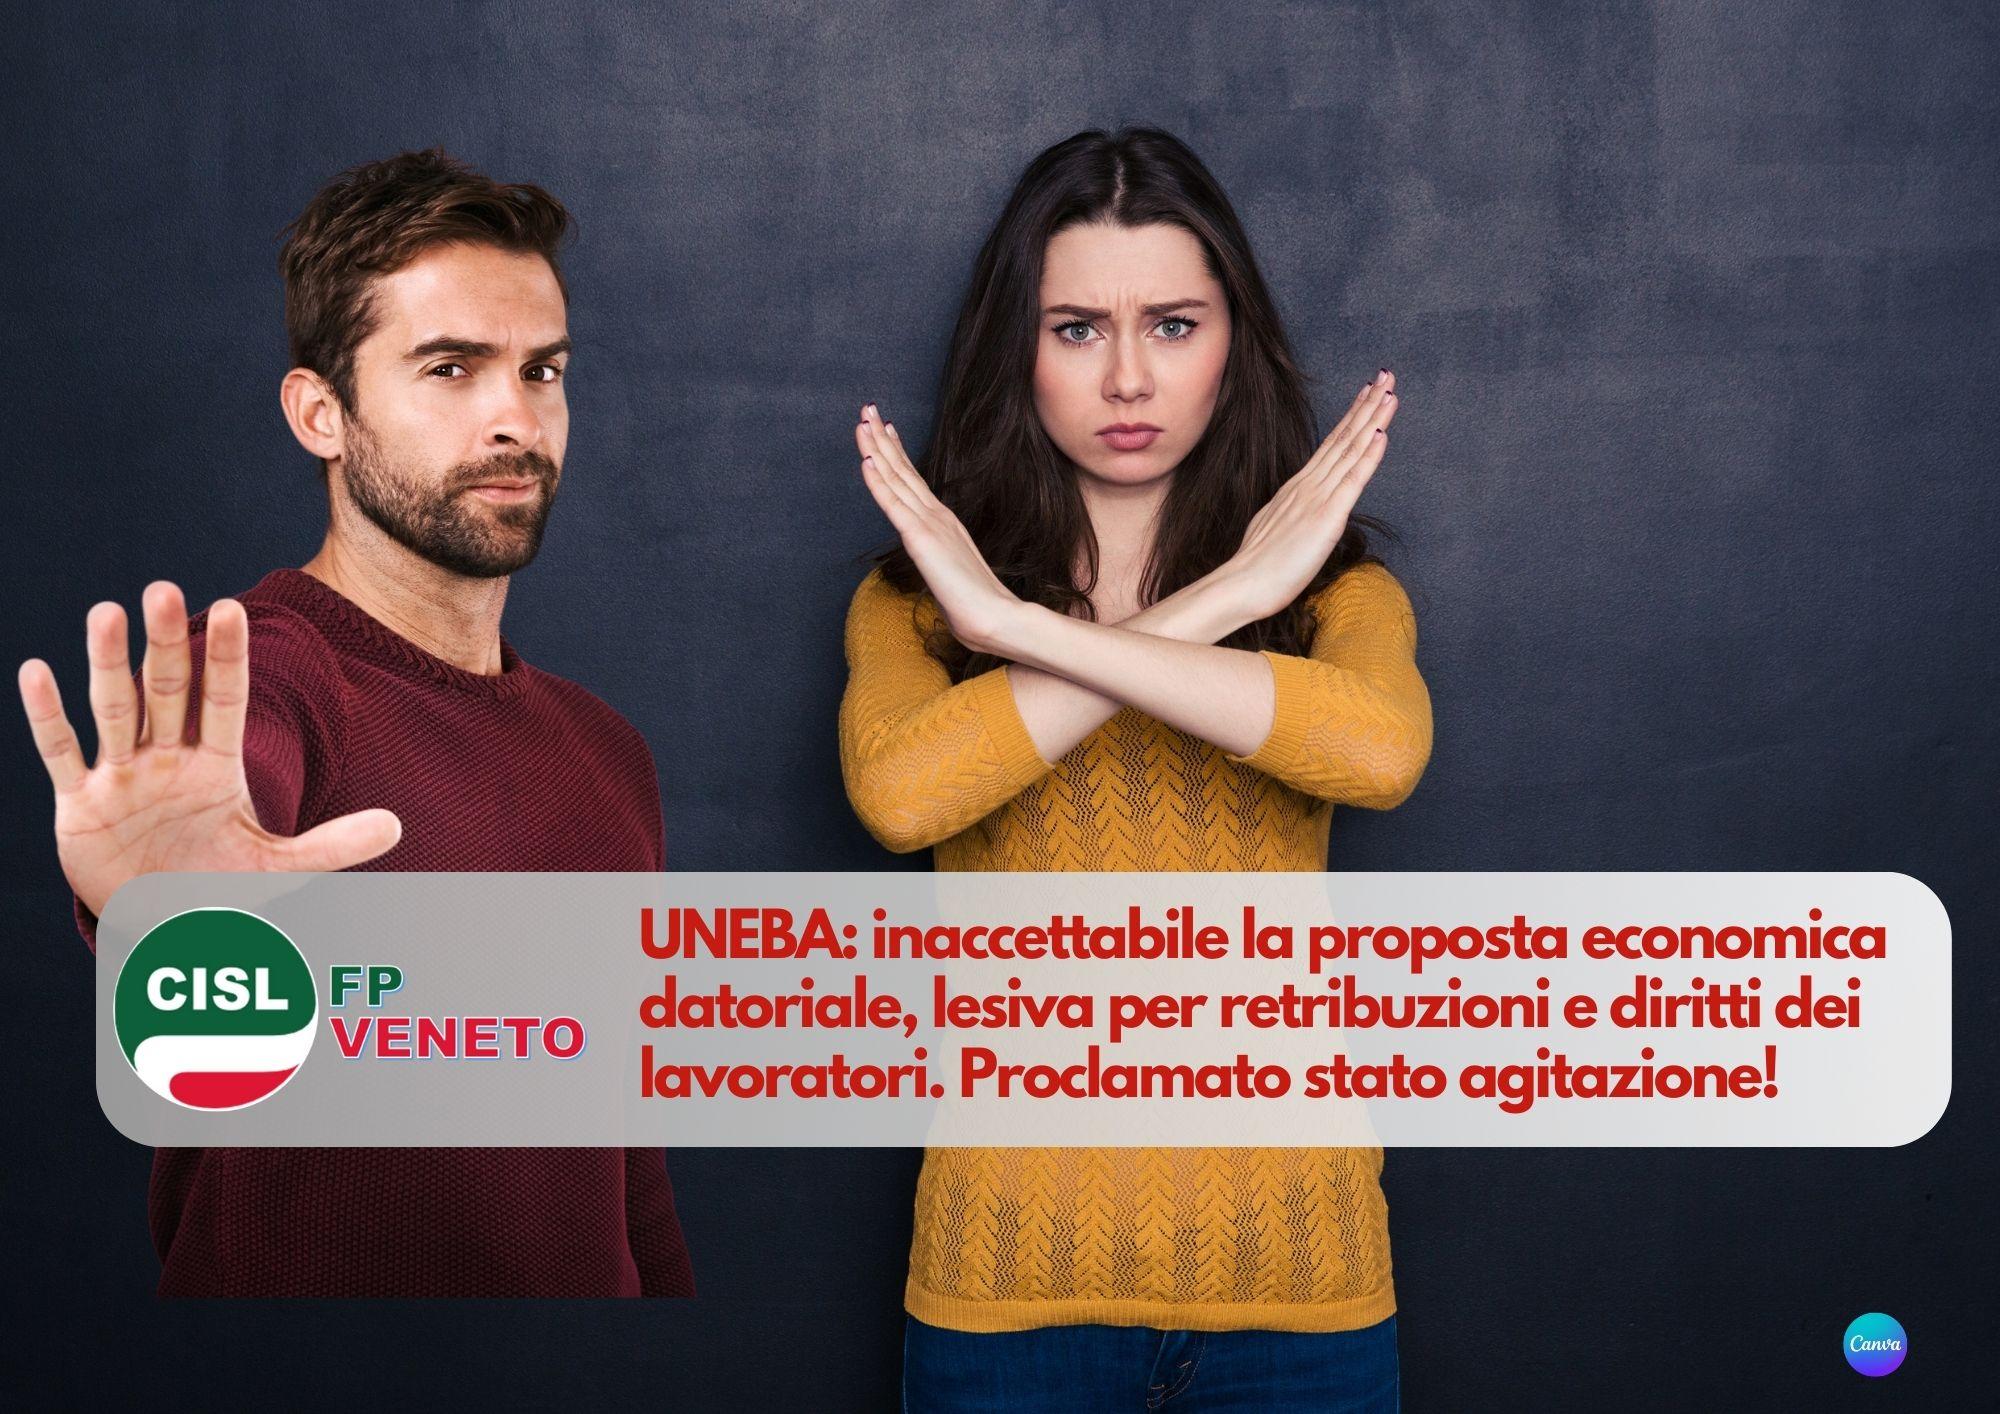 CISL FP Veneto. UNEBA inaccettabile la proposta economica datoriale. Proclamato stato agitazione